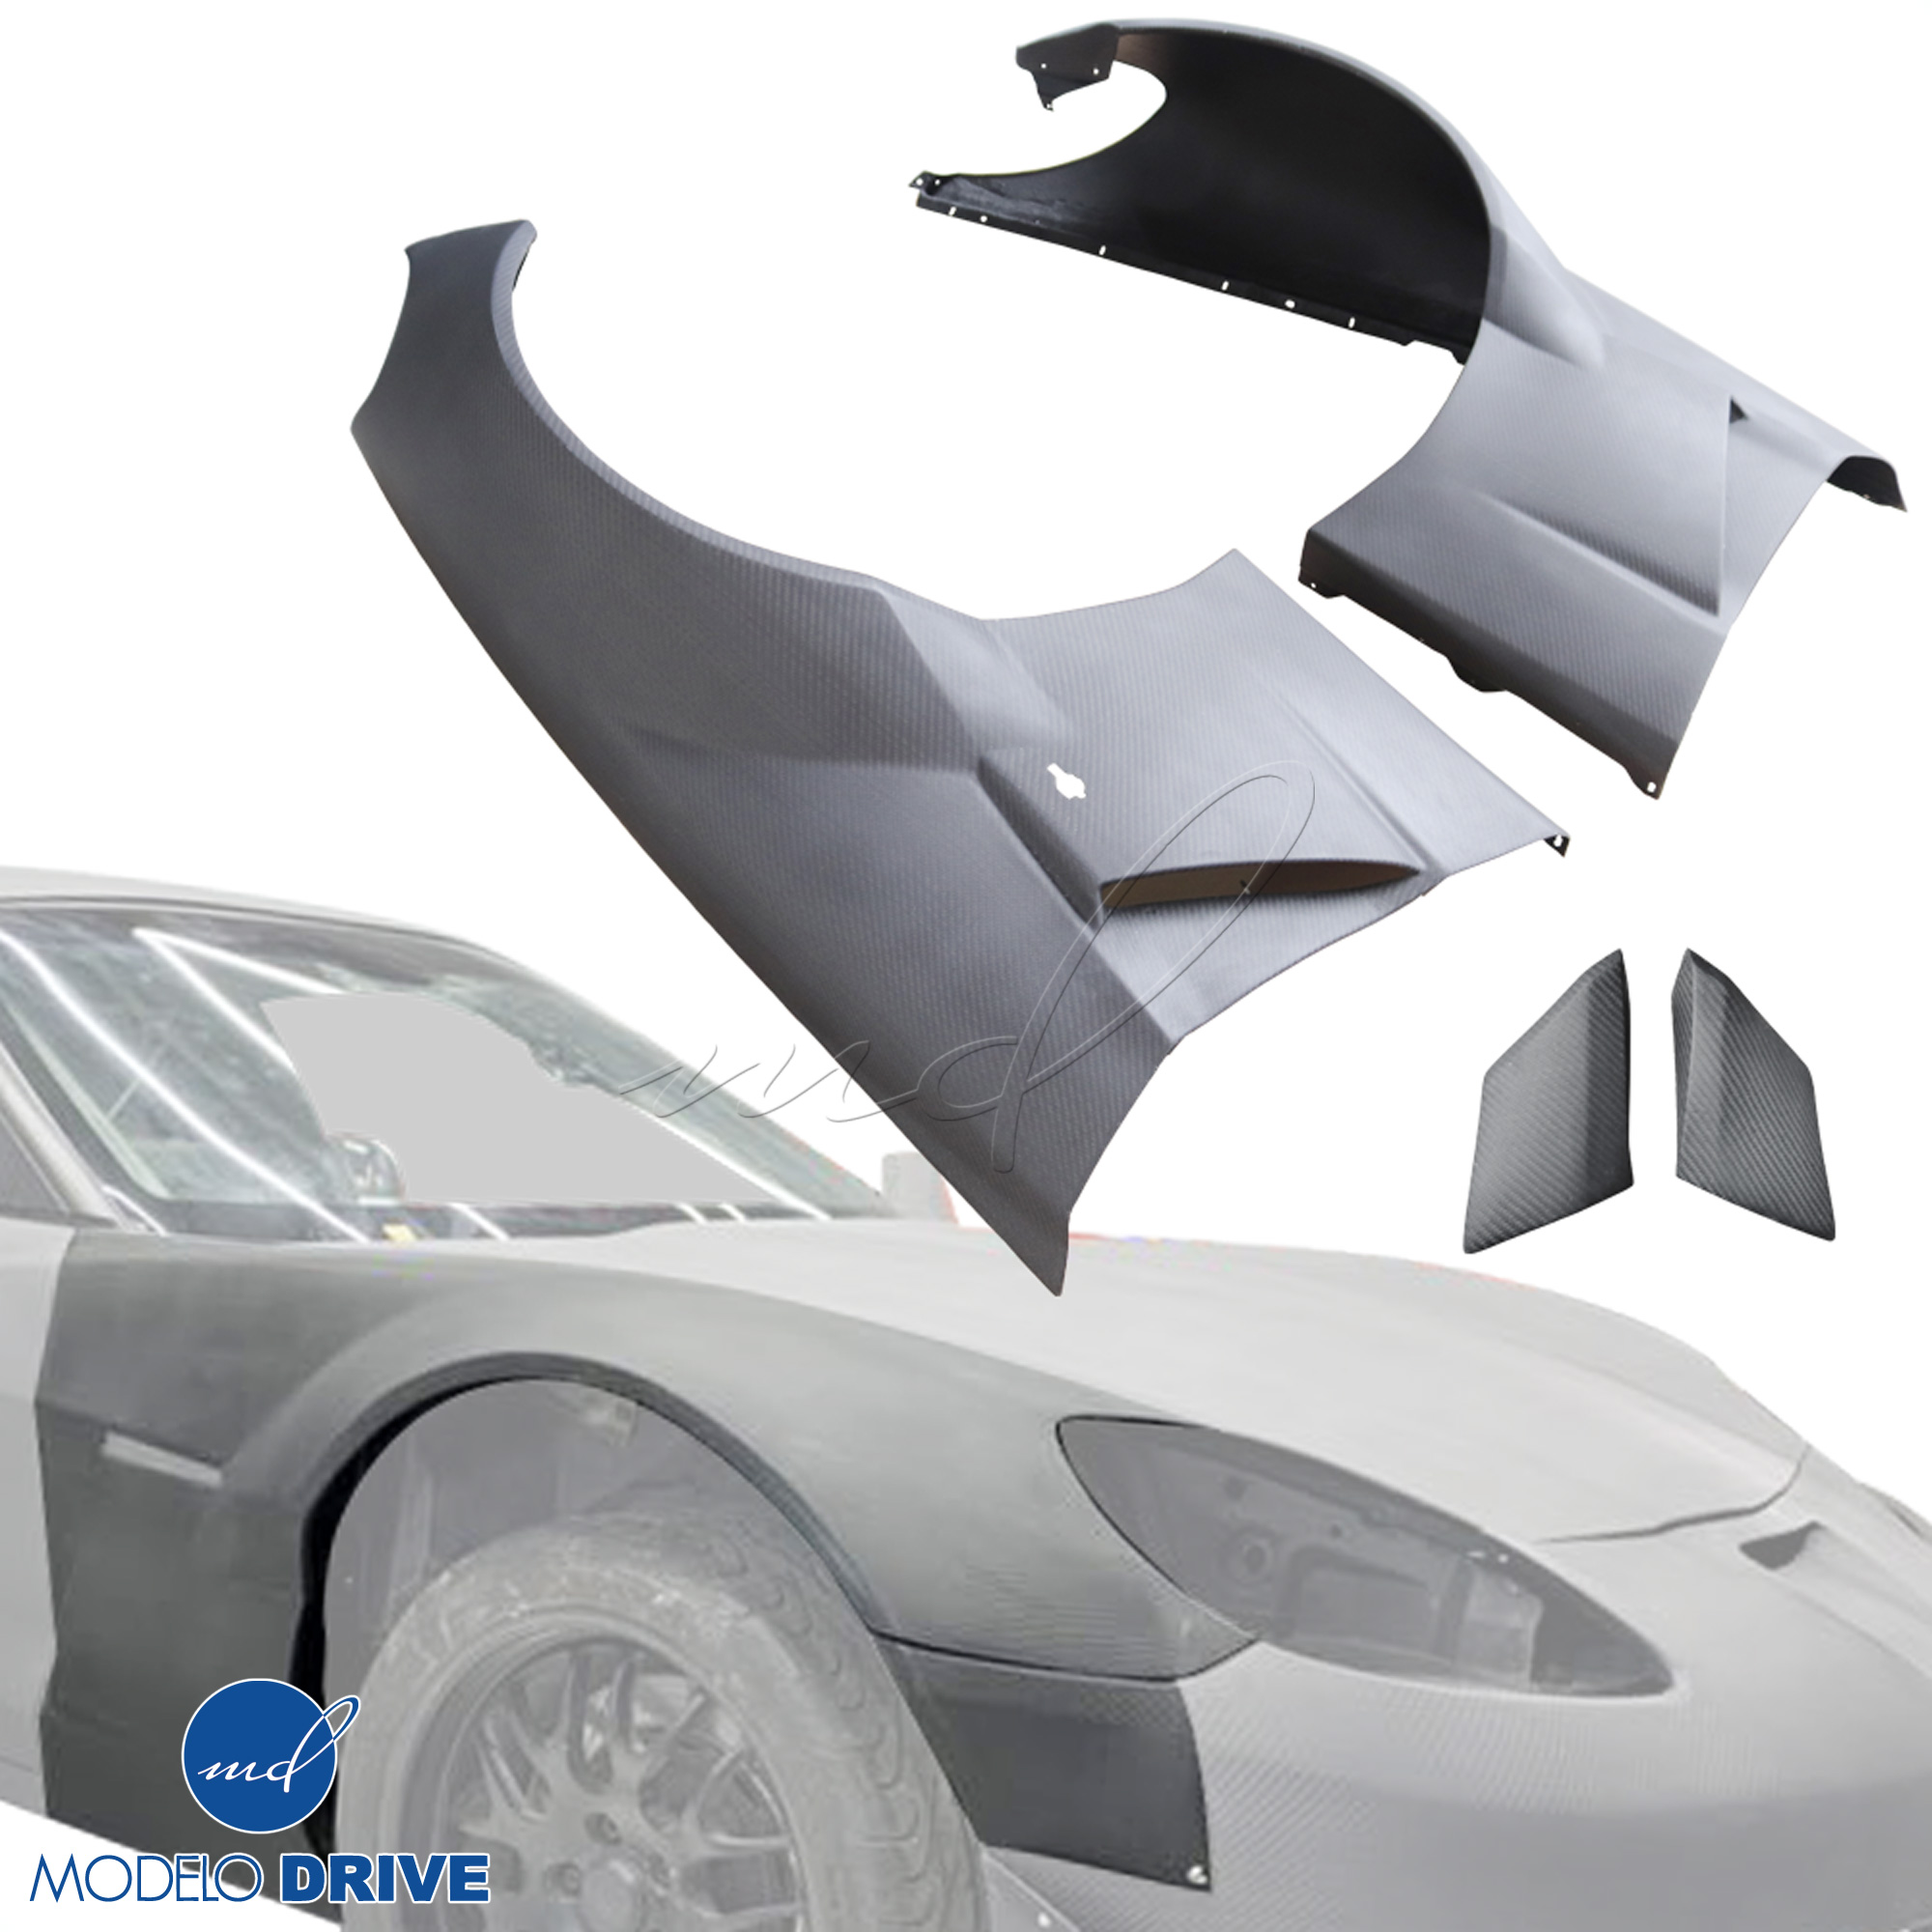 ModeloDrive Carbon Fiber GT3-XL Wide Body Fenders (front) 4pc > Chevrolet Corvette C6 2005-2013 - Image 14